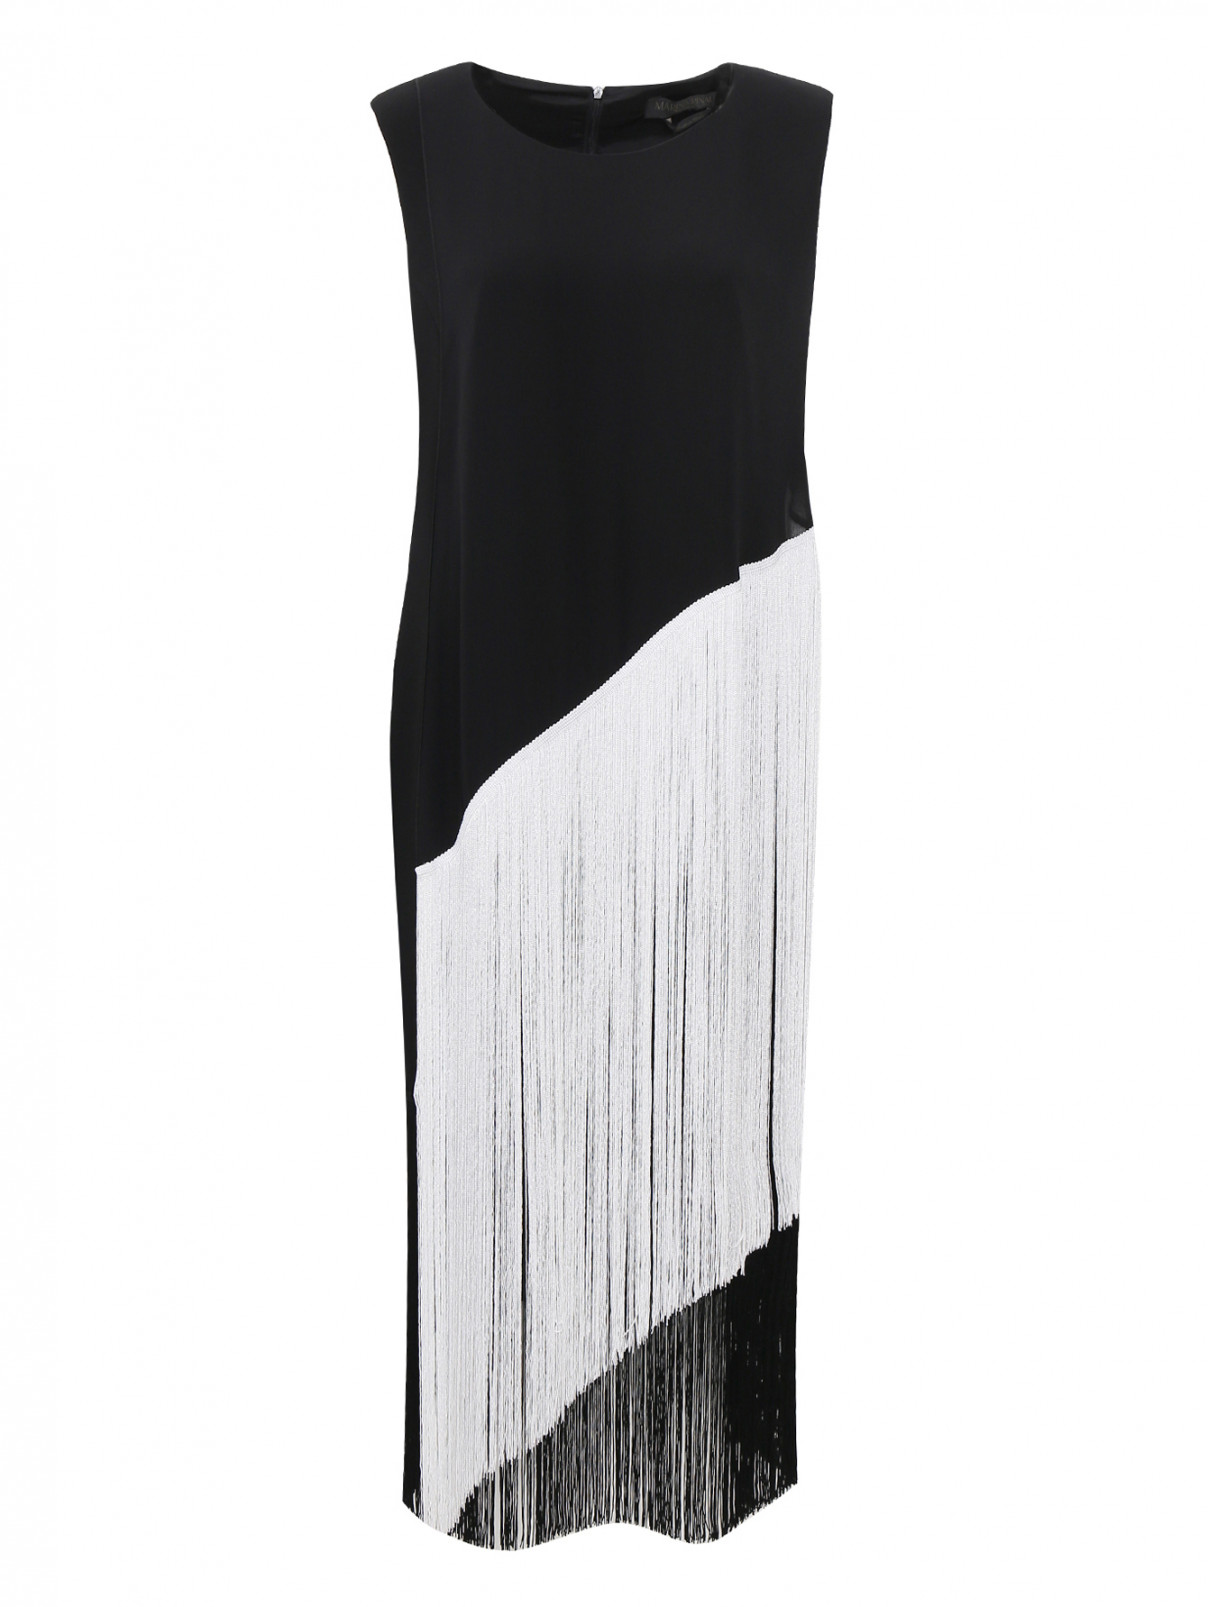 Платье-футляр с отделкой бахромой Marina Rinaldi  –  Общий вид  – Цвет:  Черный